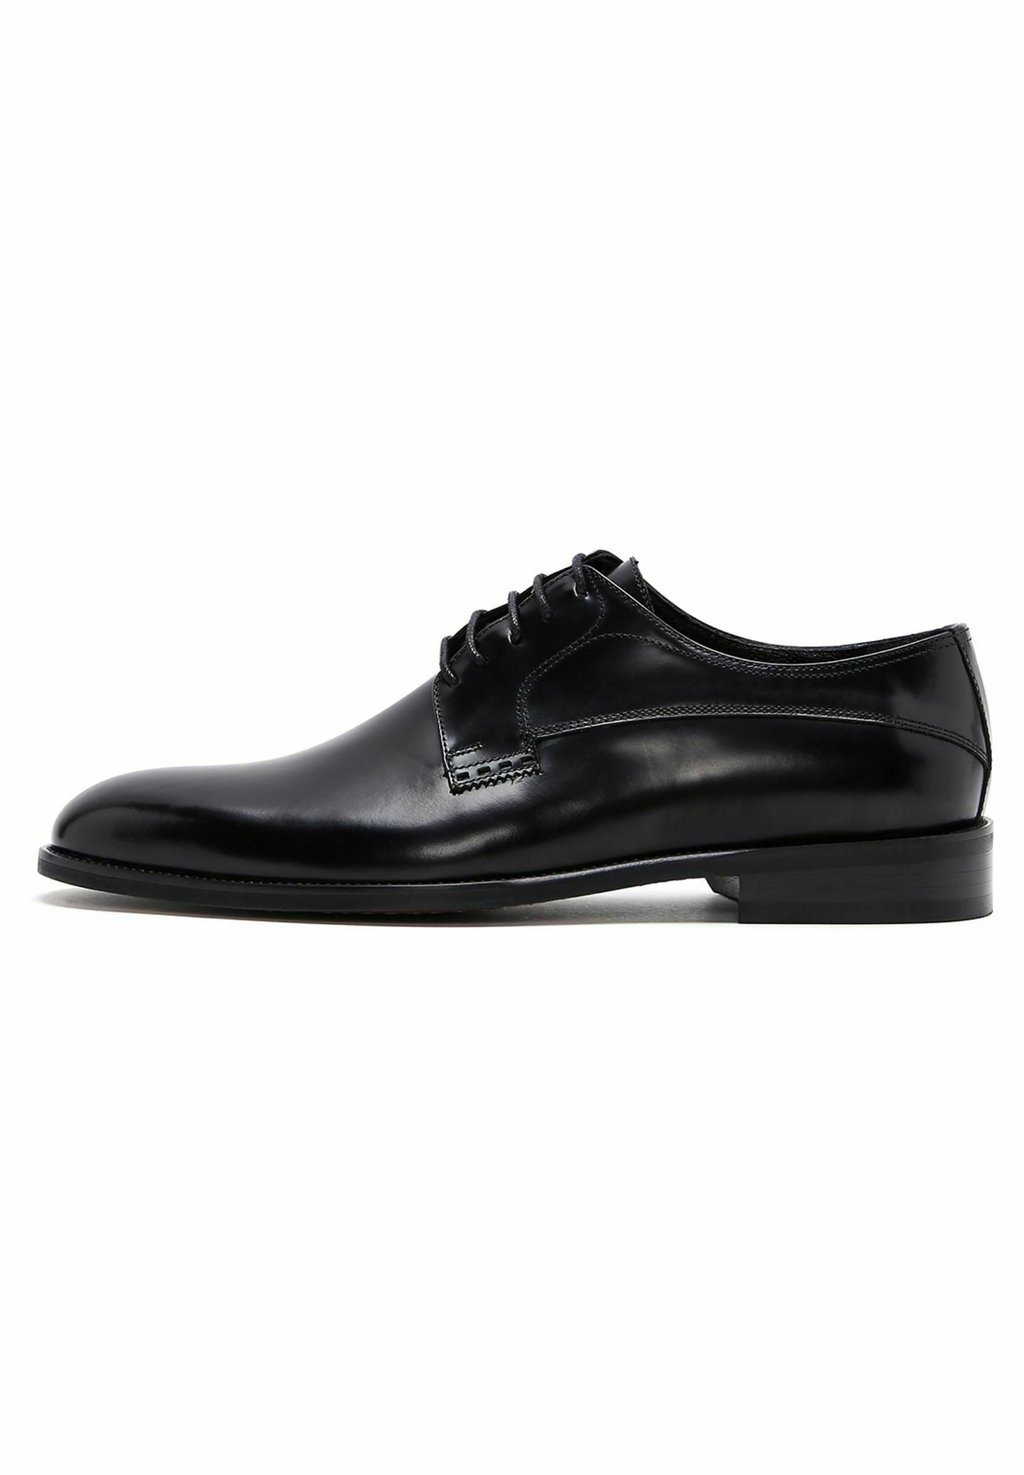 Деловые туфли на шнуровке CLASSIC Derimod, цвет black туфли на шнуровке classic derimod цвет brown